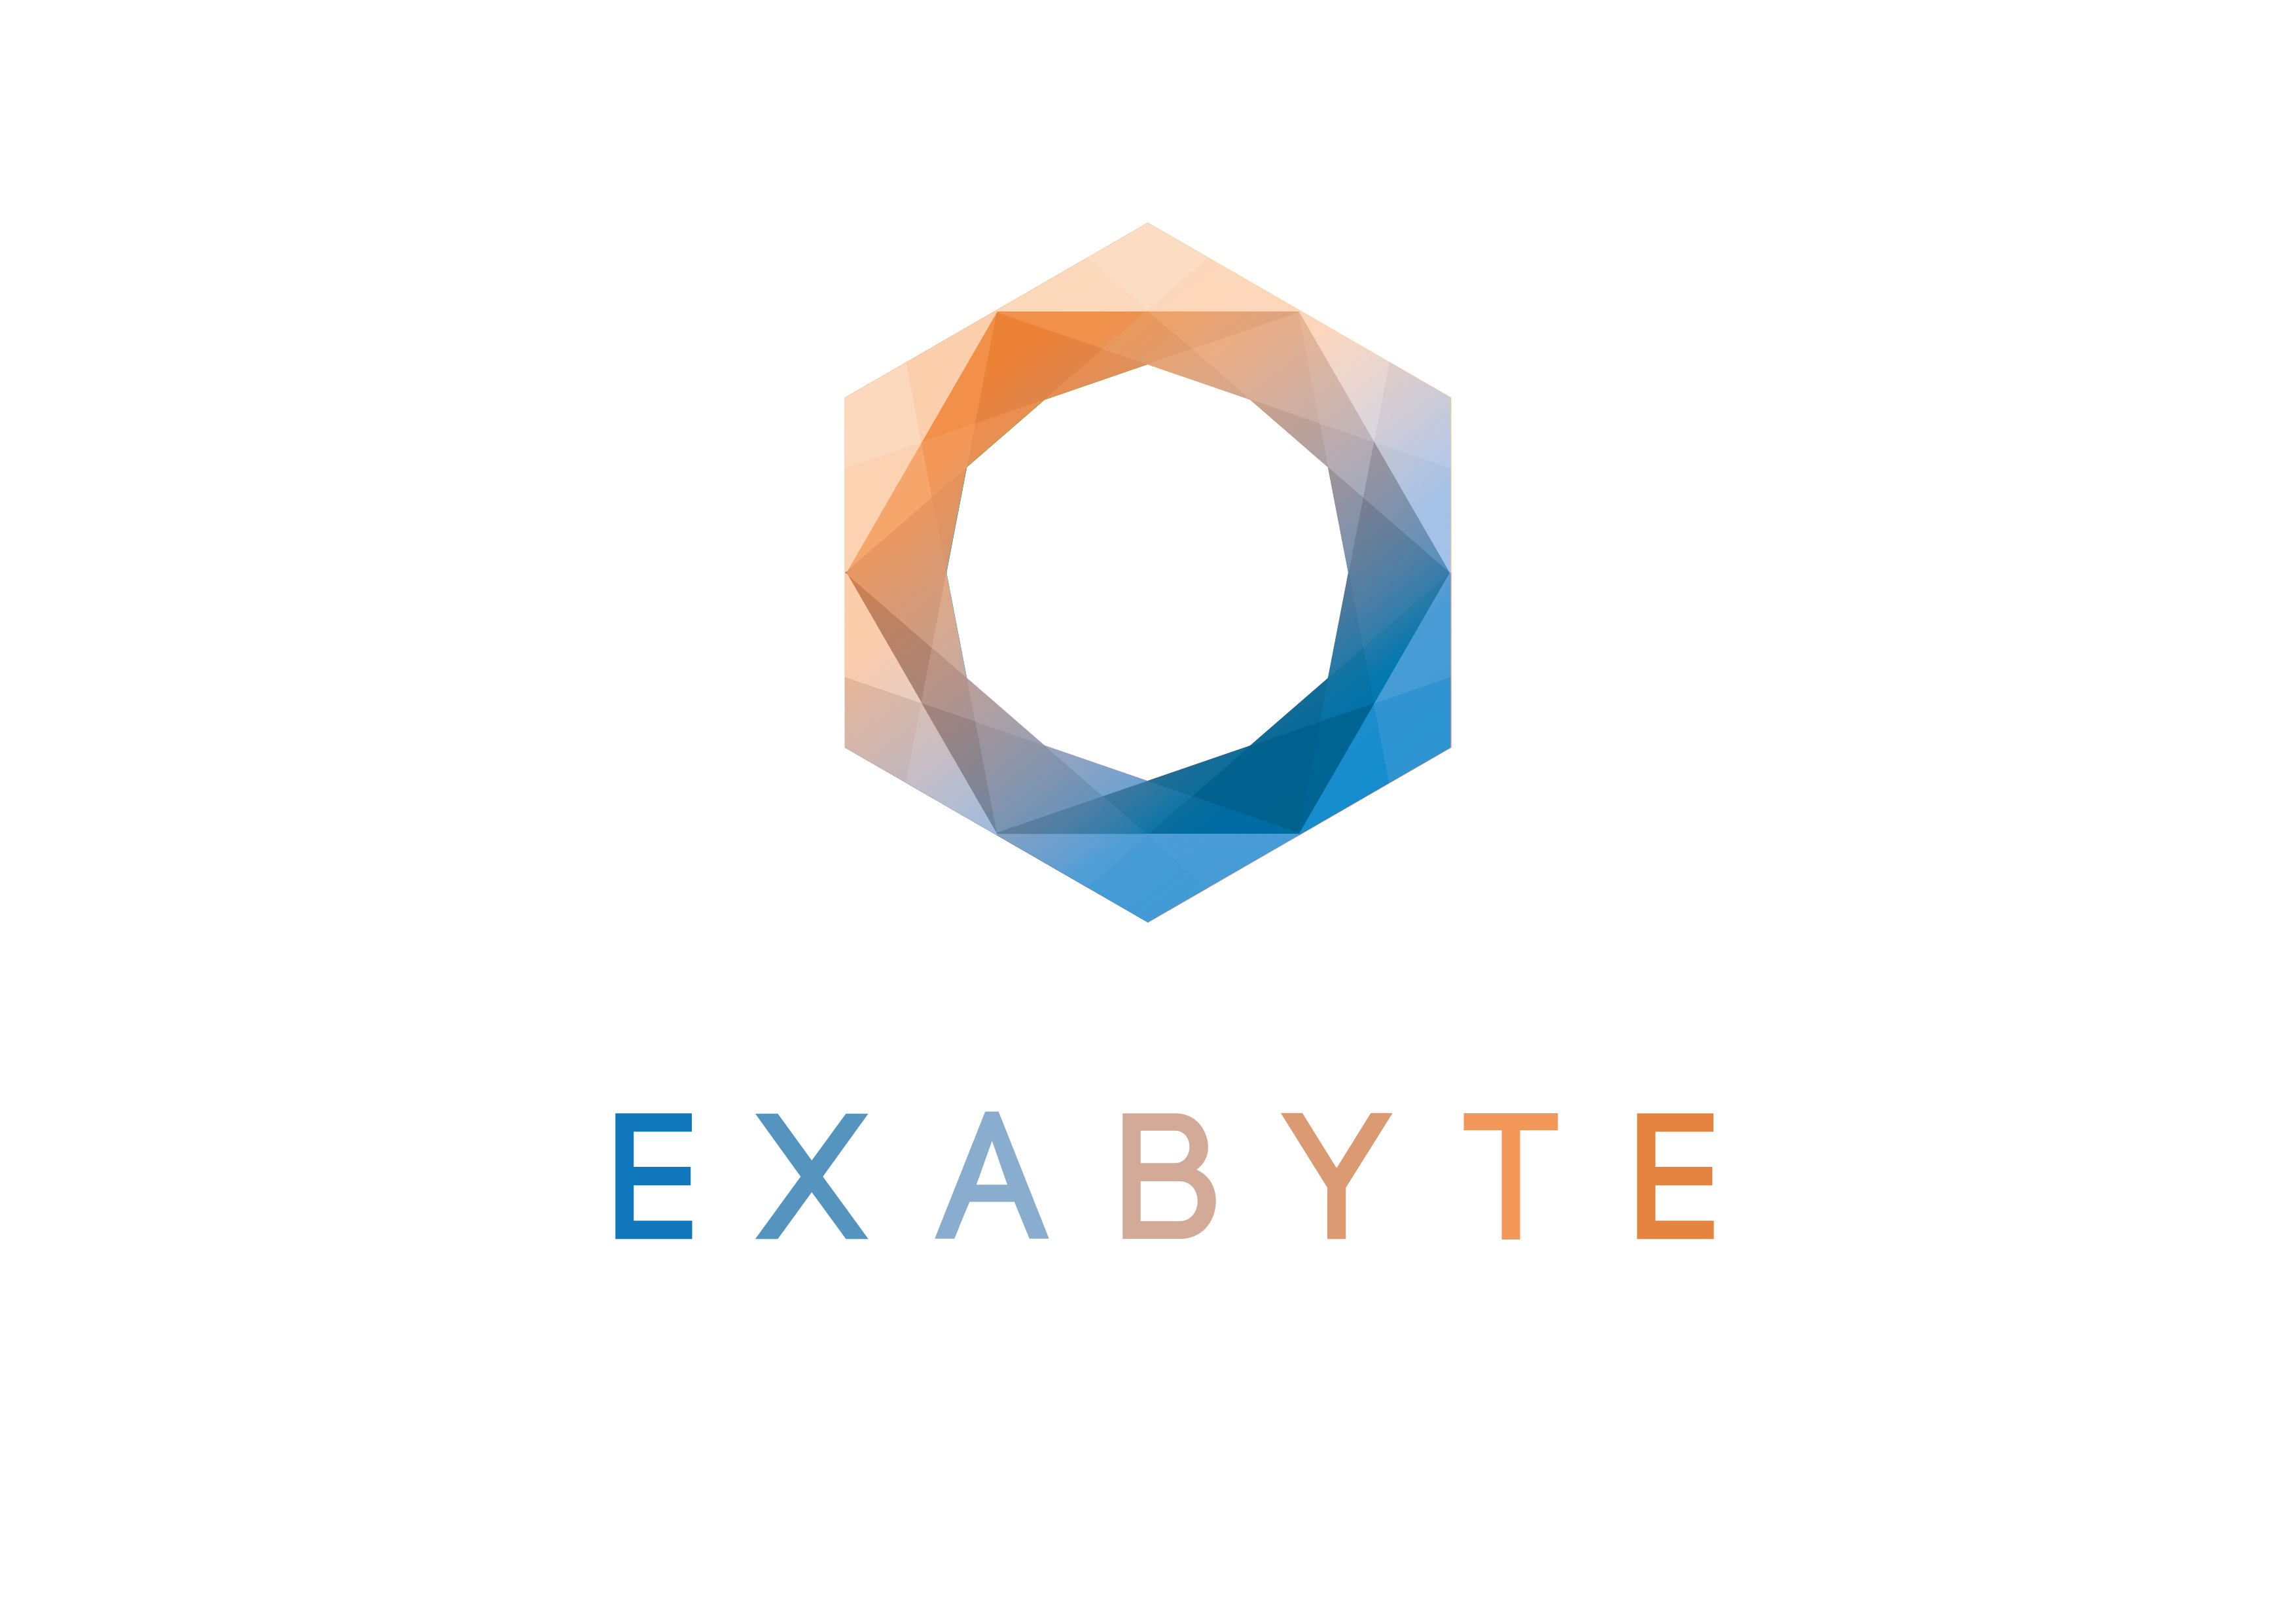 Exabyte srl